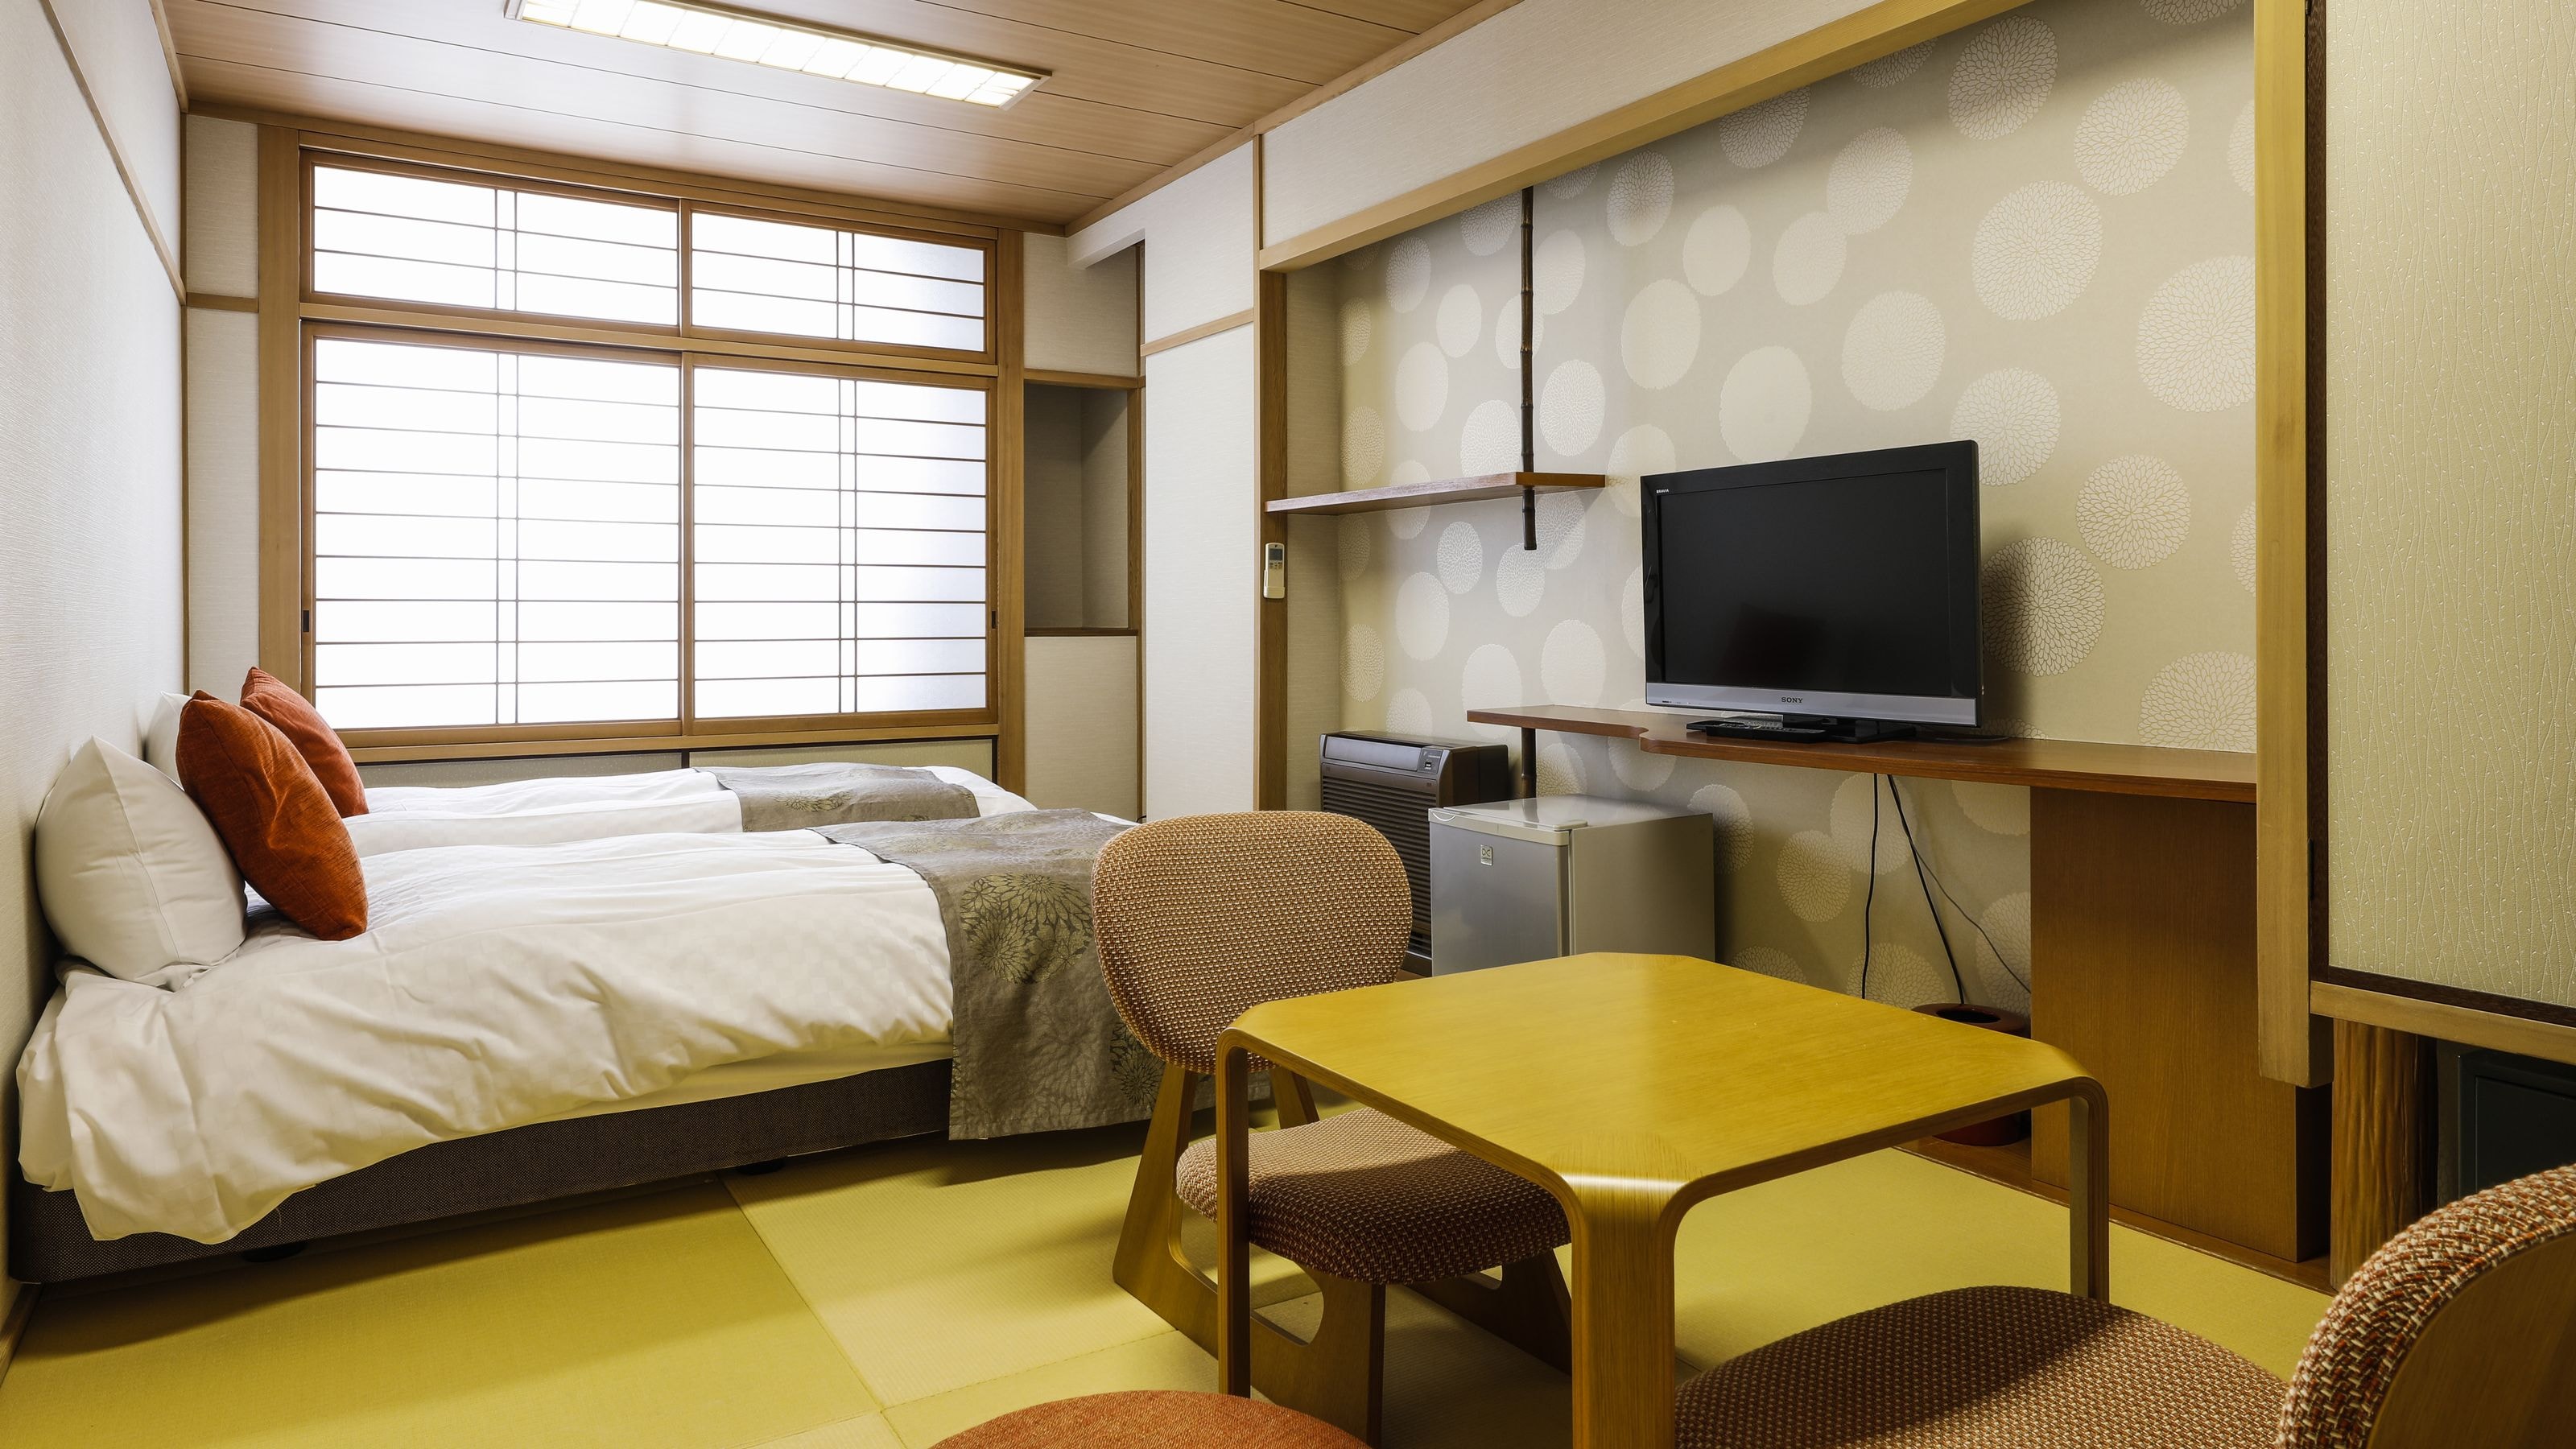 * ตัวอย่างสมัยใหม่ของญี่ปุ่น: มีเตียงคู่ซิมมอนส์ให้บริการ